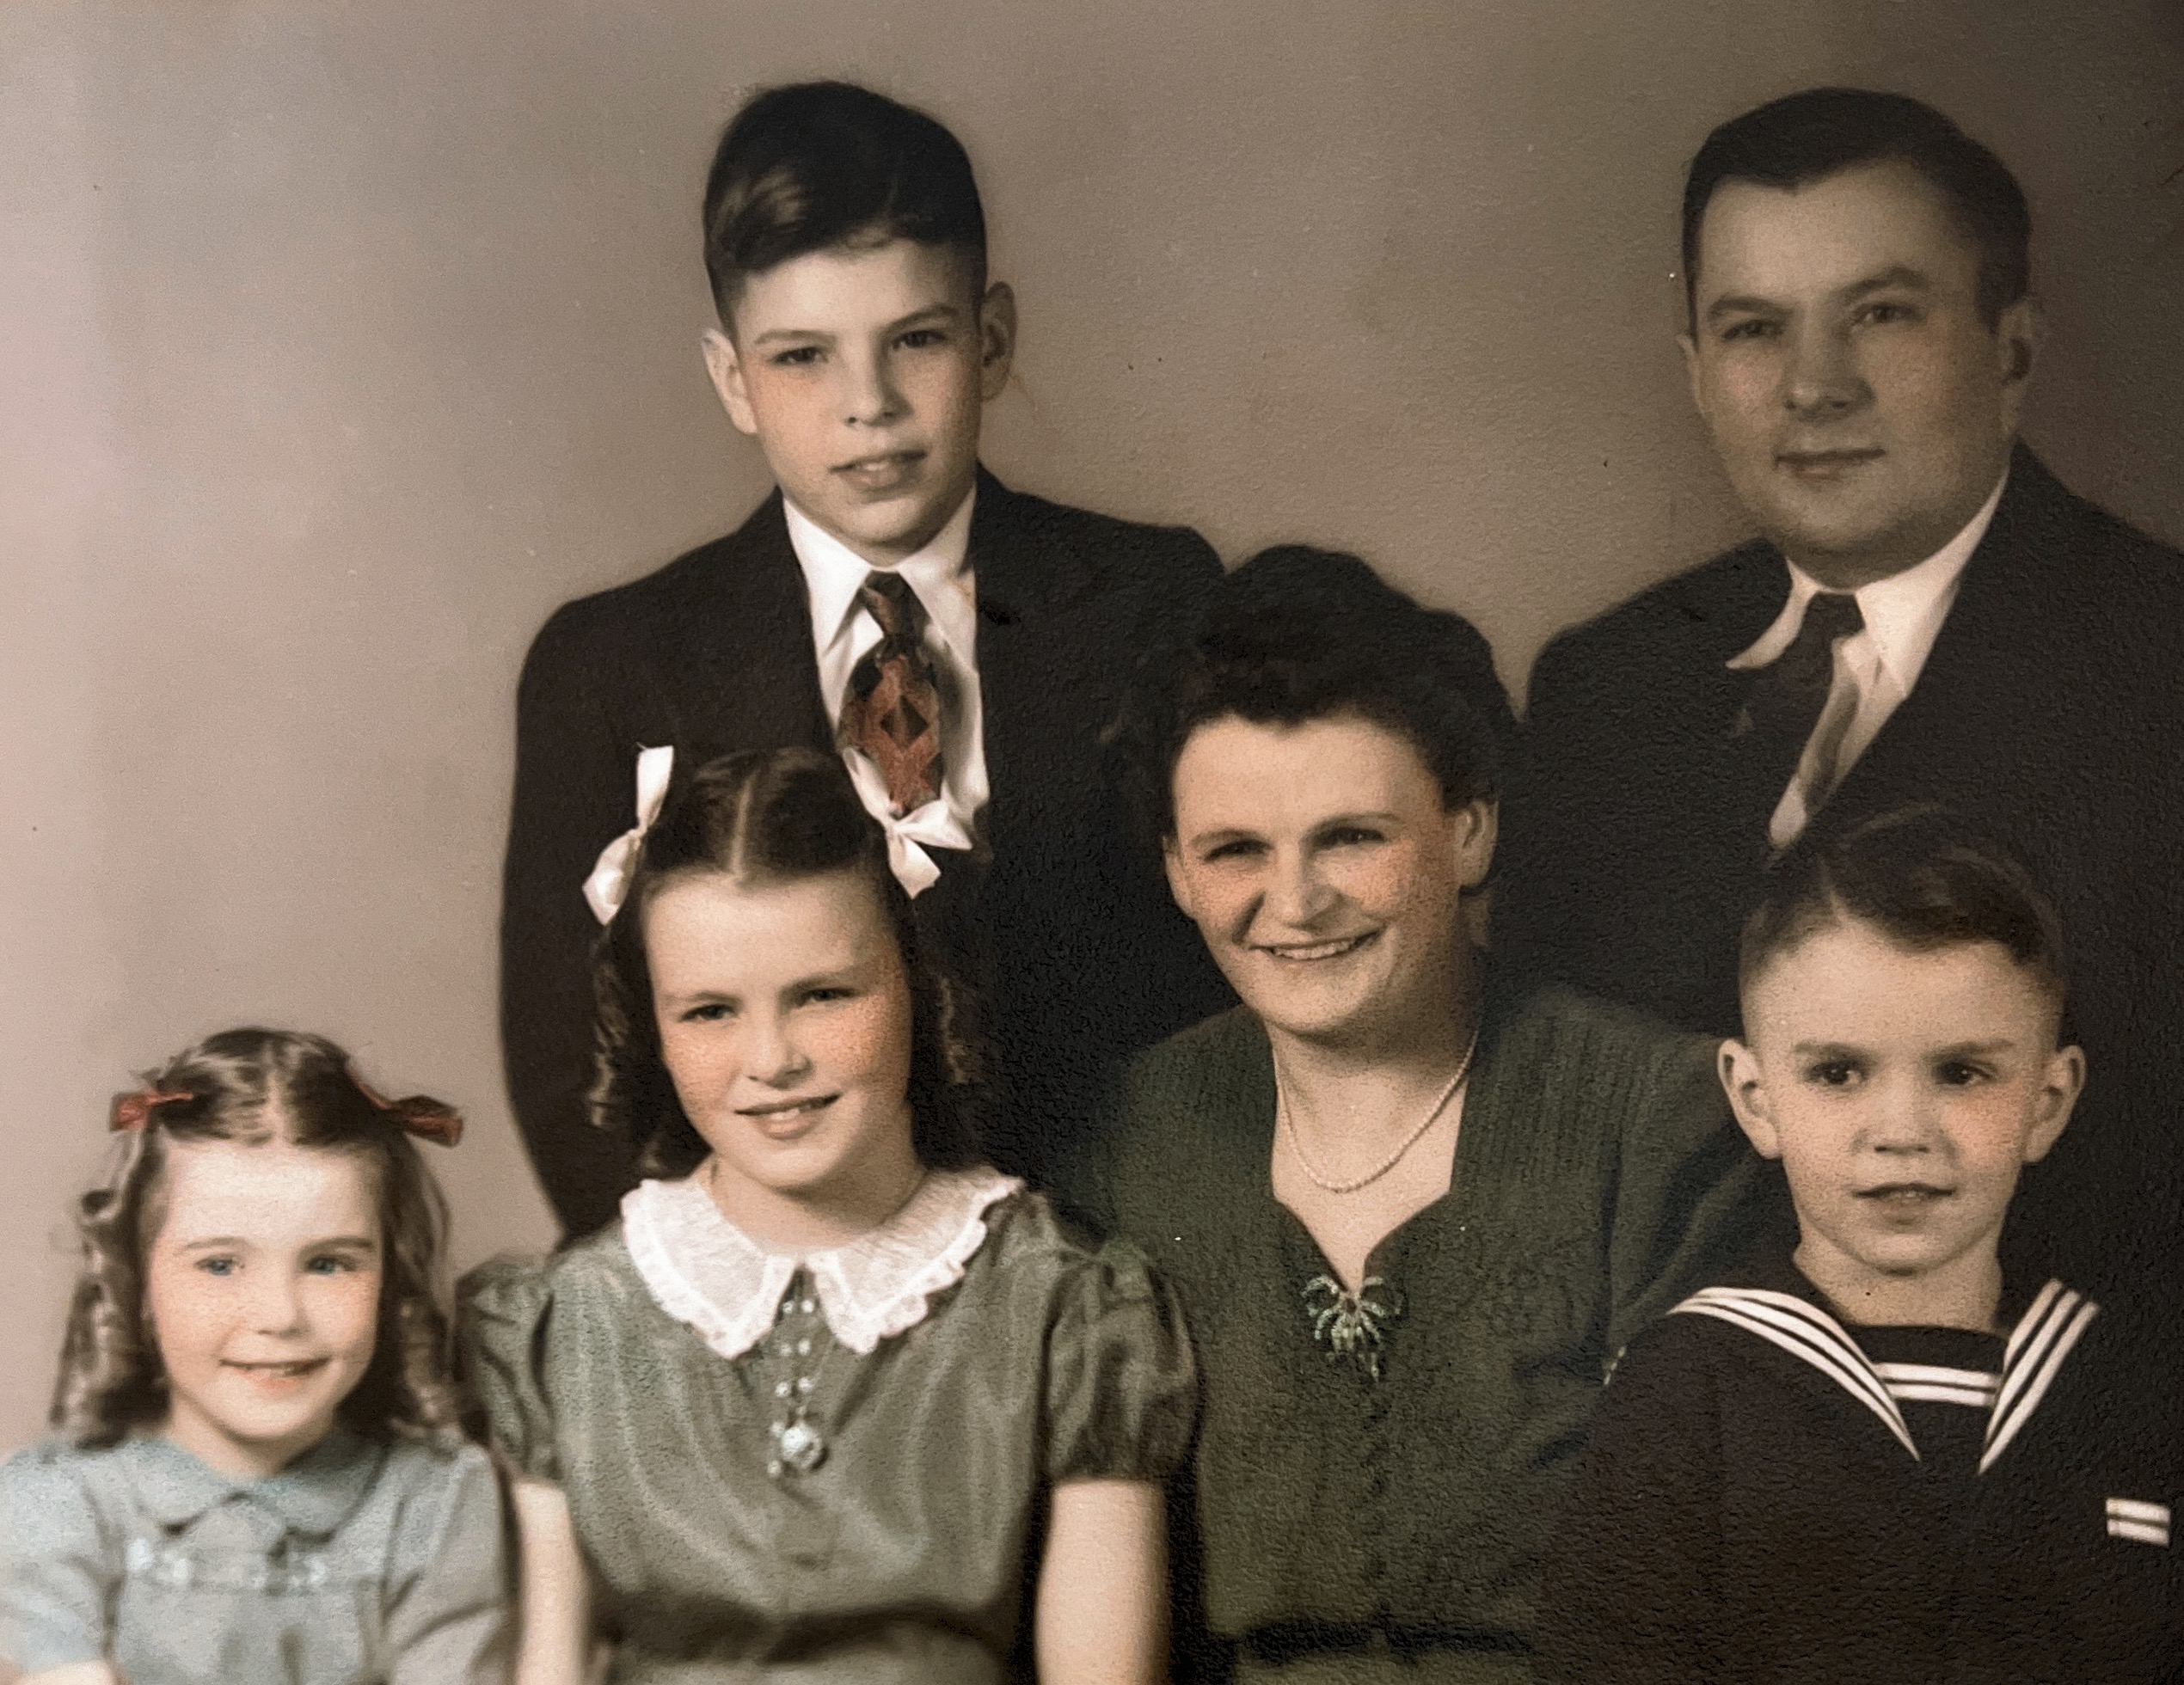 The Karsko family. Steve and Erma children, John, Nancy, Helen, and Bernard. 1944